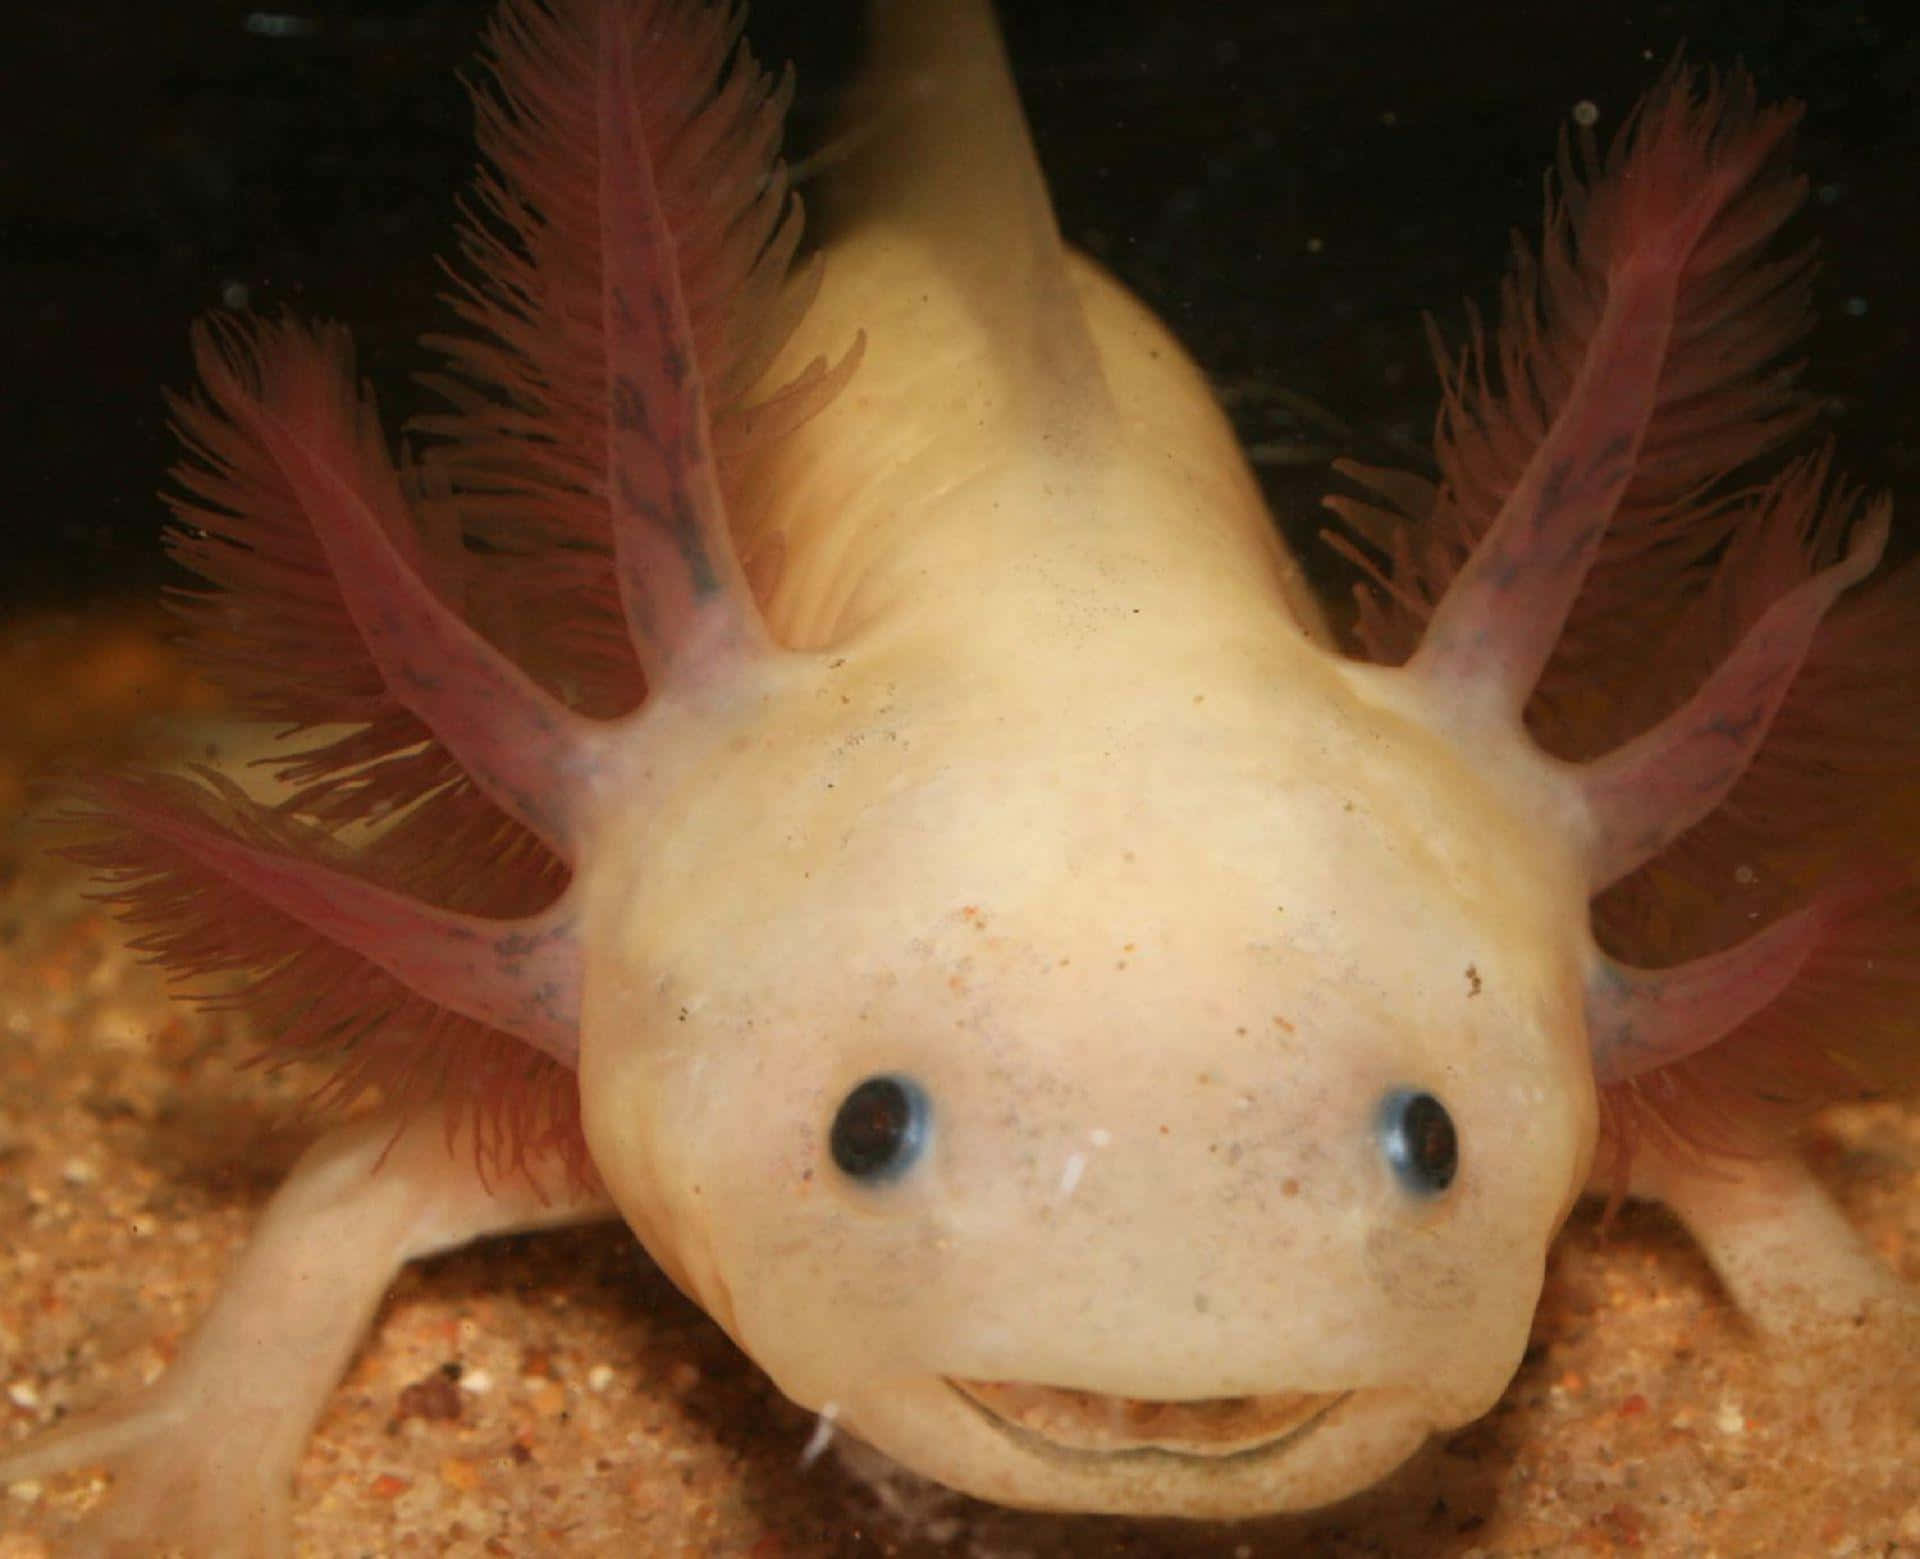 A happy axolotl smiling at you